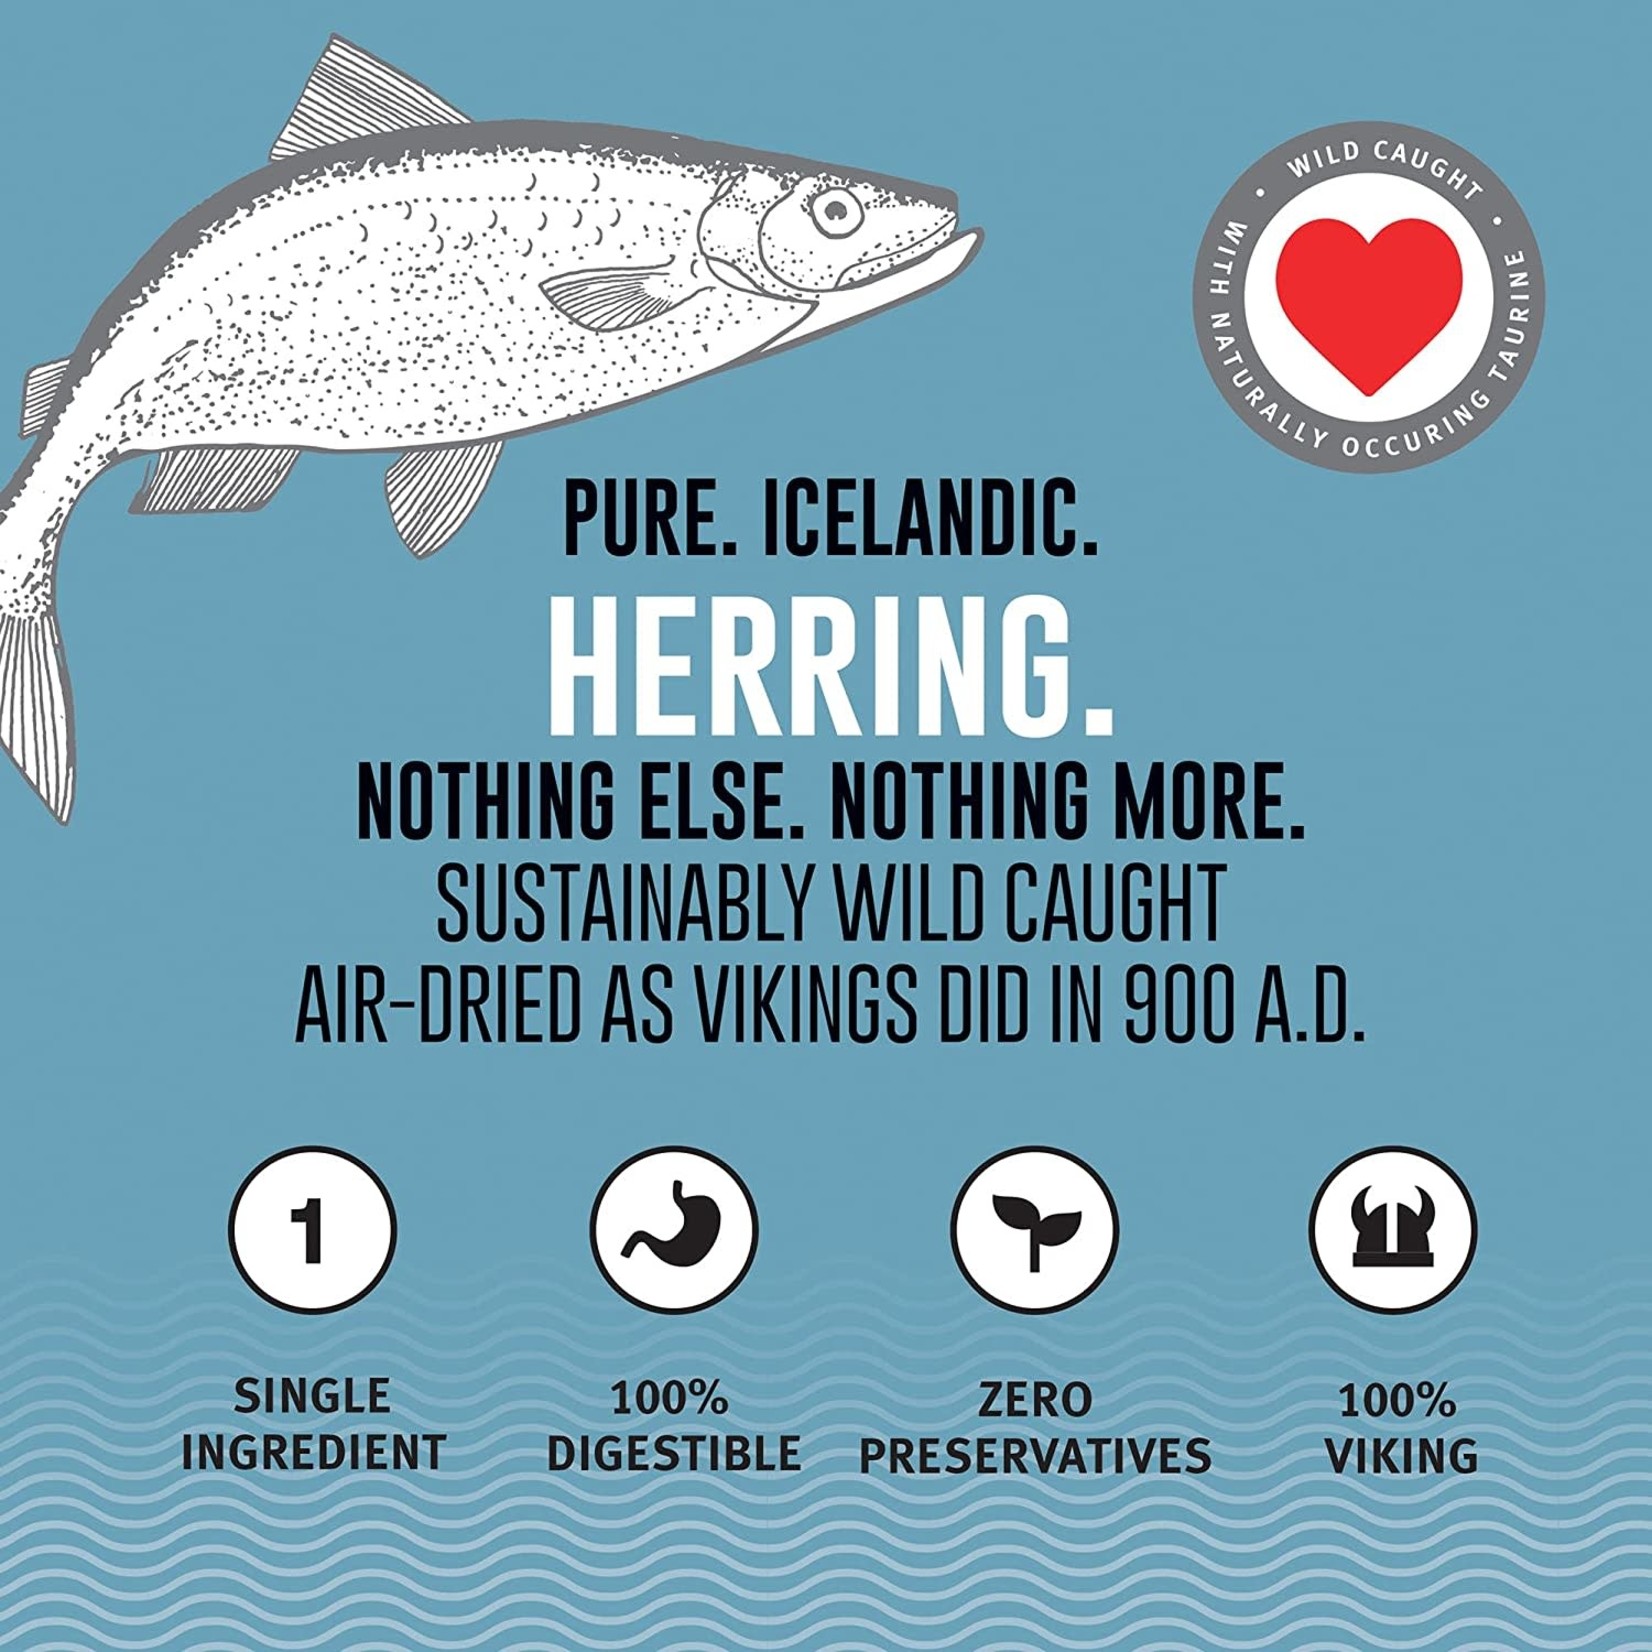 Icelandic+ Icelandic+ Herring Whole Fish Dog Treats 85g